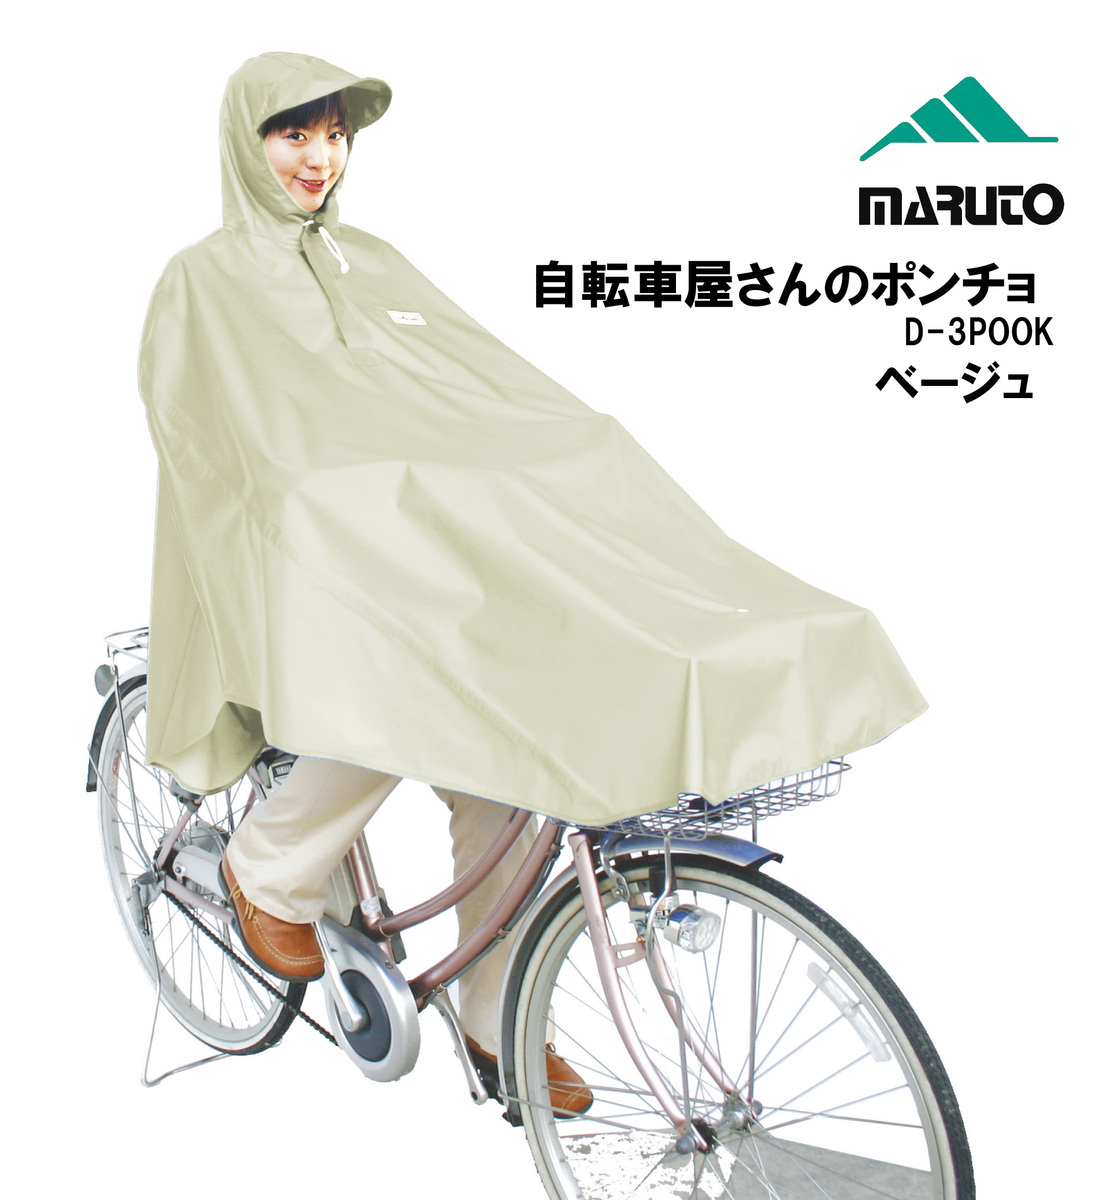 最安値で MARUTO 大久保製作所 D-3POOK 自転車屋さんのポンチョ<br>自転車 電動自転車 レインウェア ポンチョ 雨除け レインコート  ベージュ